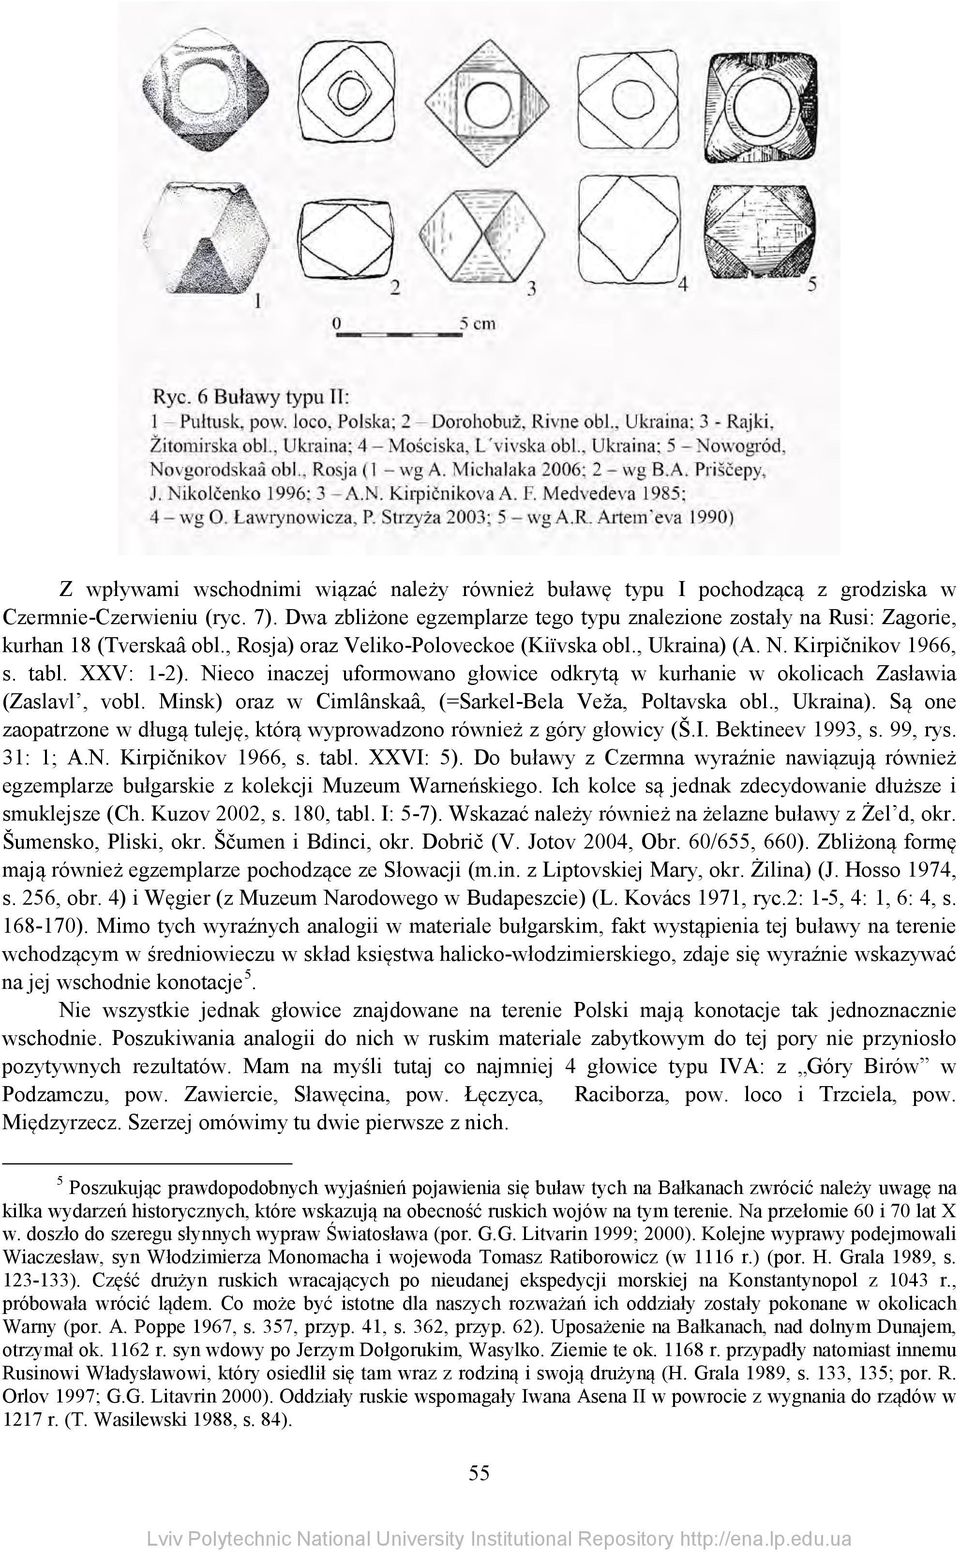 Nieco inaczej uformowano głowice odkrytą w kurhanie w okolicach Zasławia (Zaslavl, vobl. Minsk) oraz w Cimlânskaâ, (=Sarkel-Bela Veža, Poltavska obl., Ukraina).